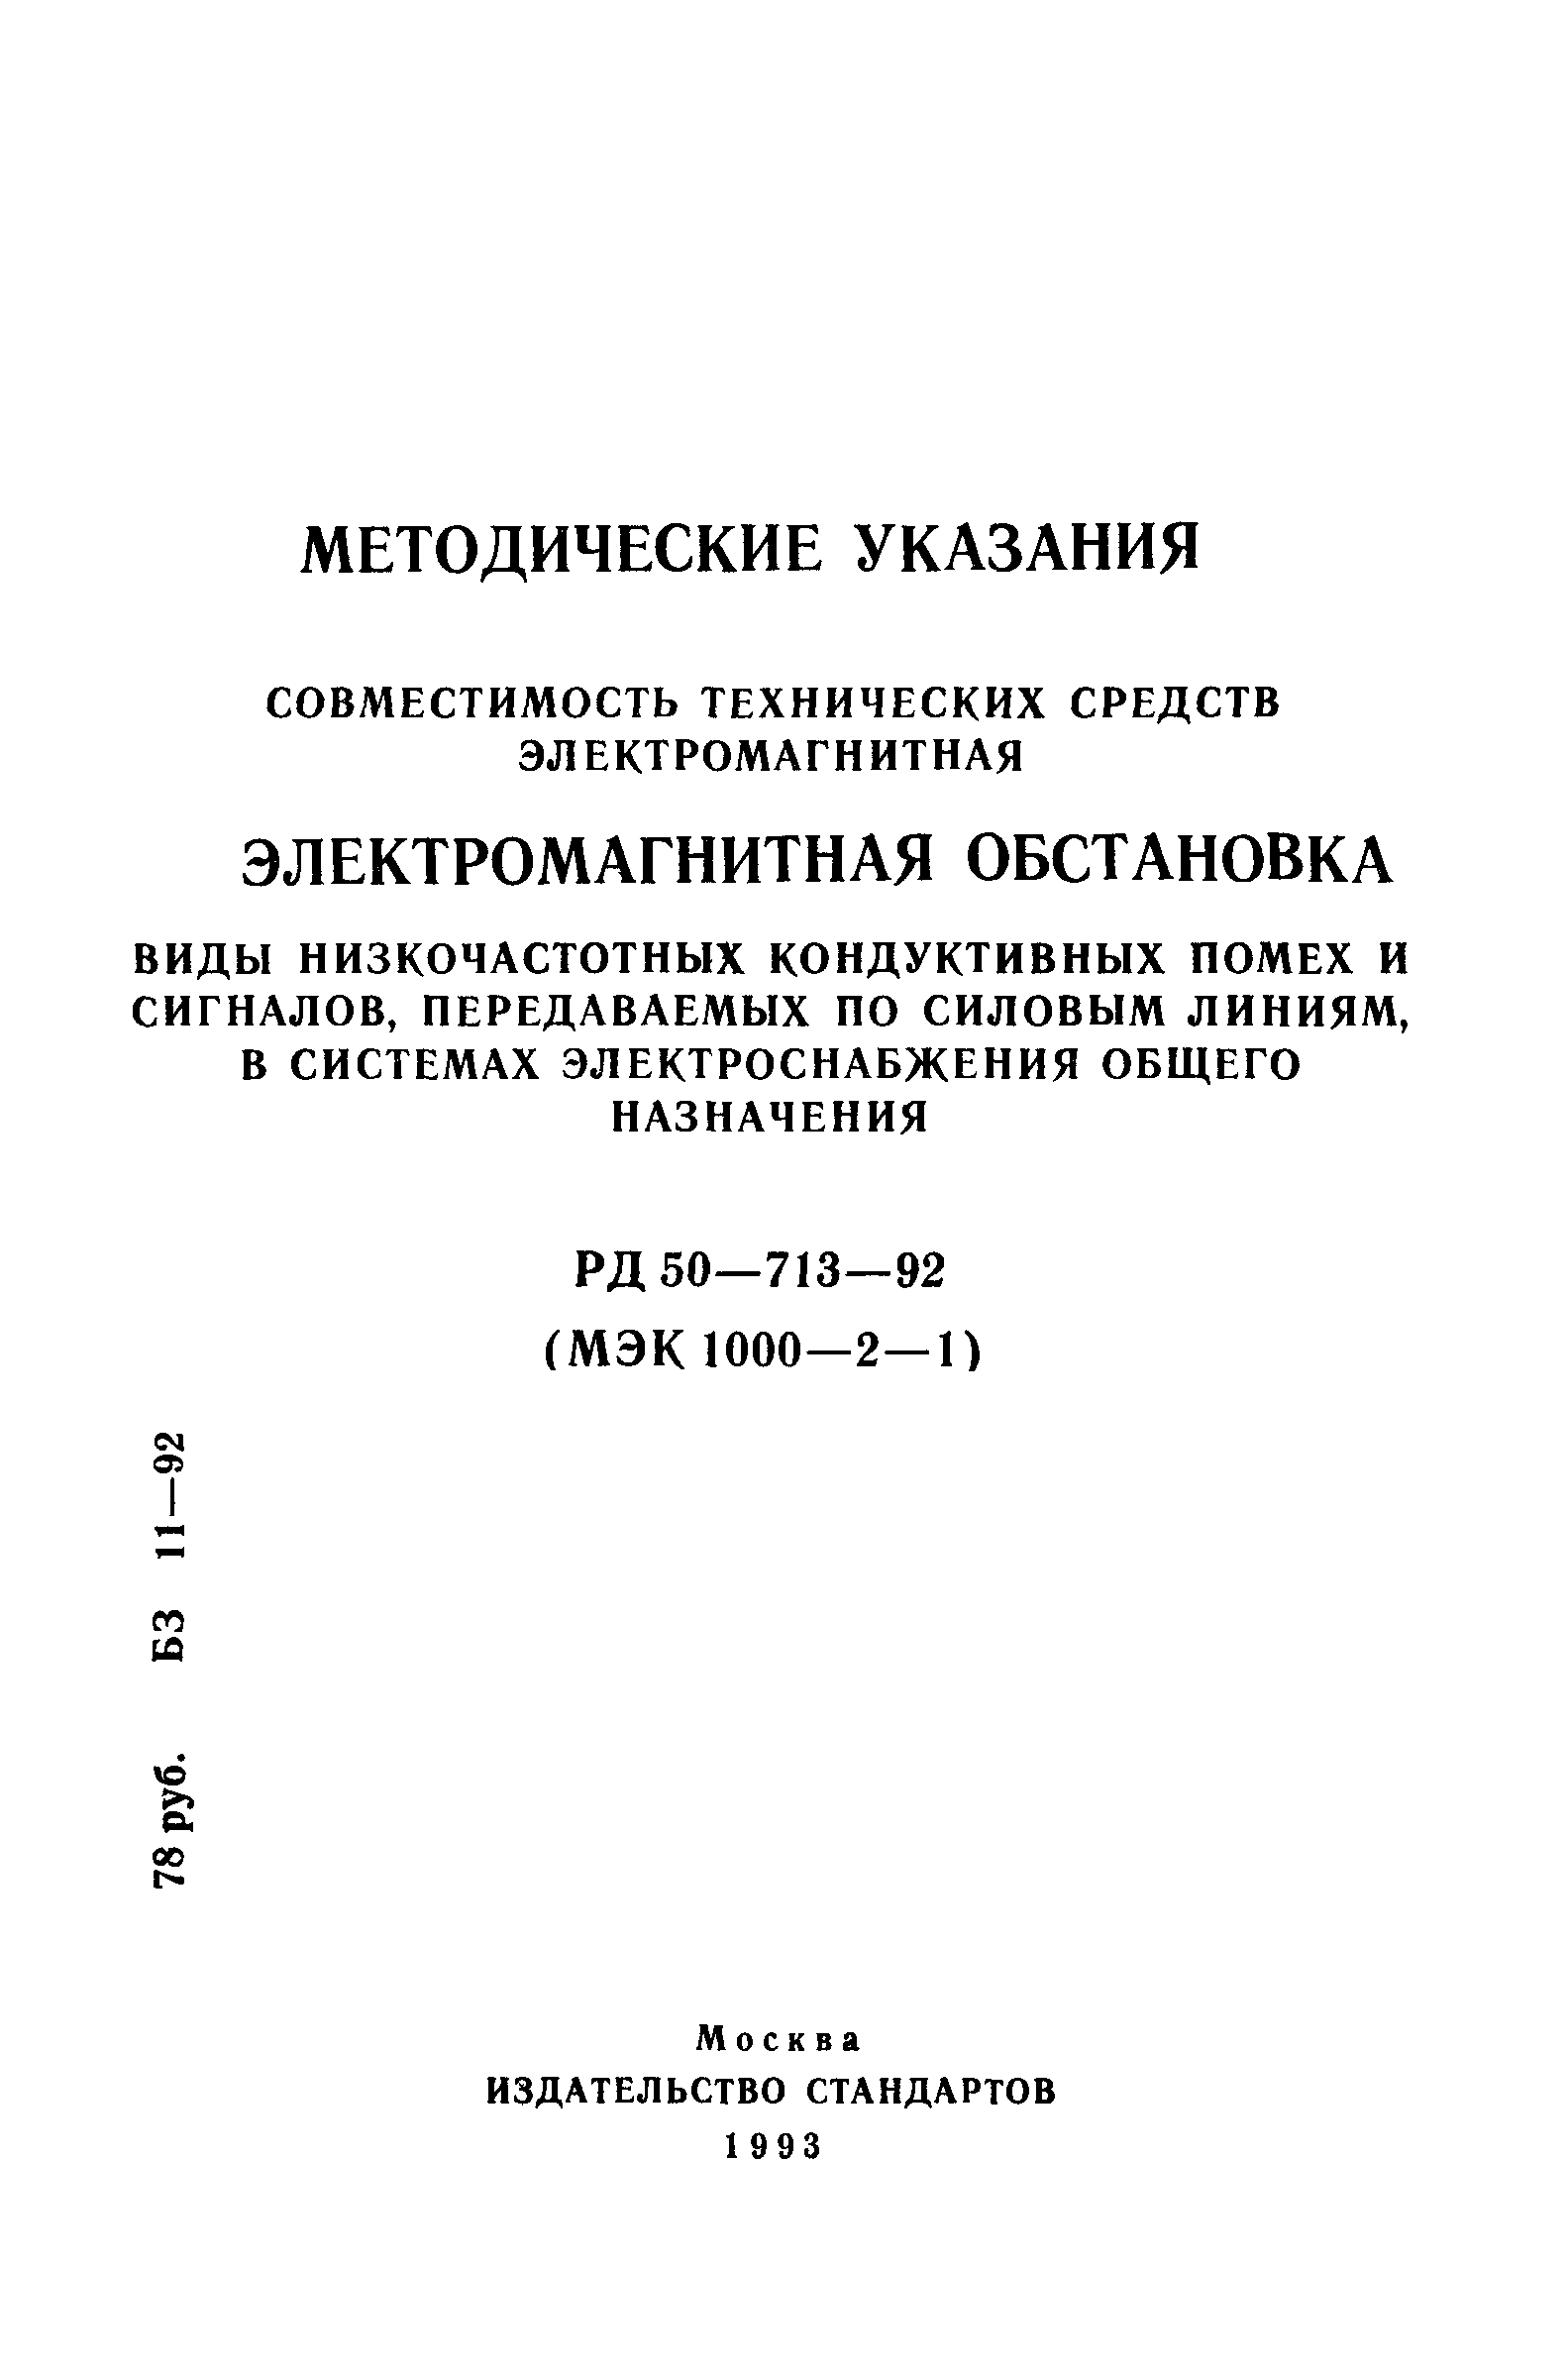 РД 50-713-92